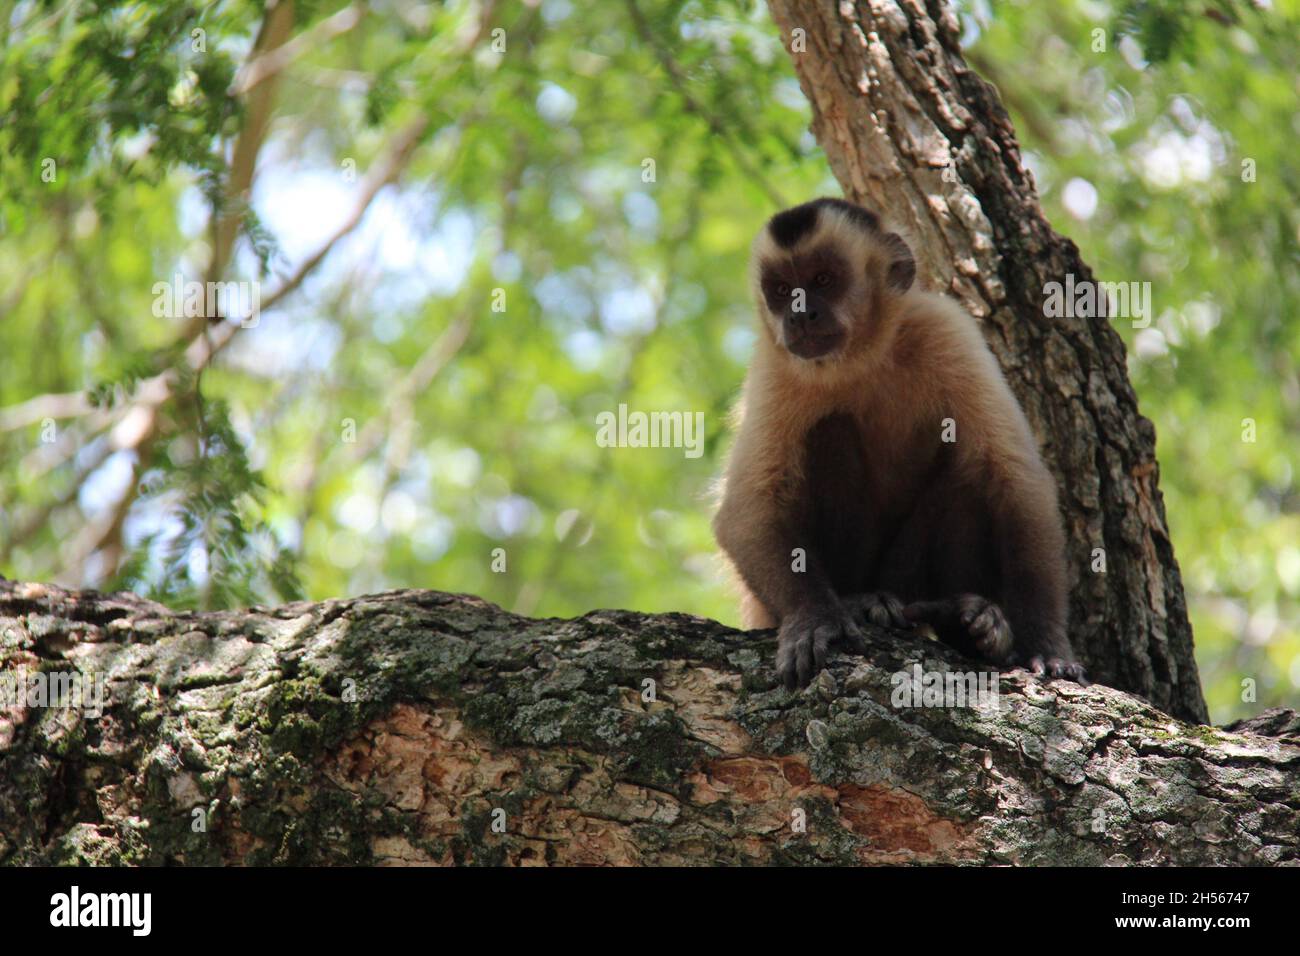 Singe assis sur un tronc d'arbre, avec un arrière-plan flou.Bonito - Mato Grosso do Sul - Brésil. Banque D'Images